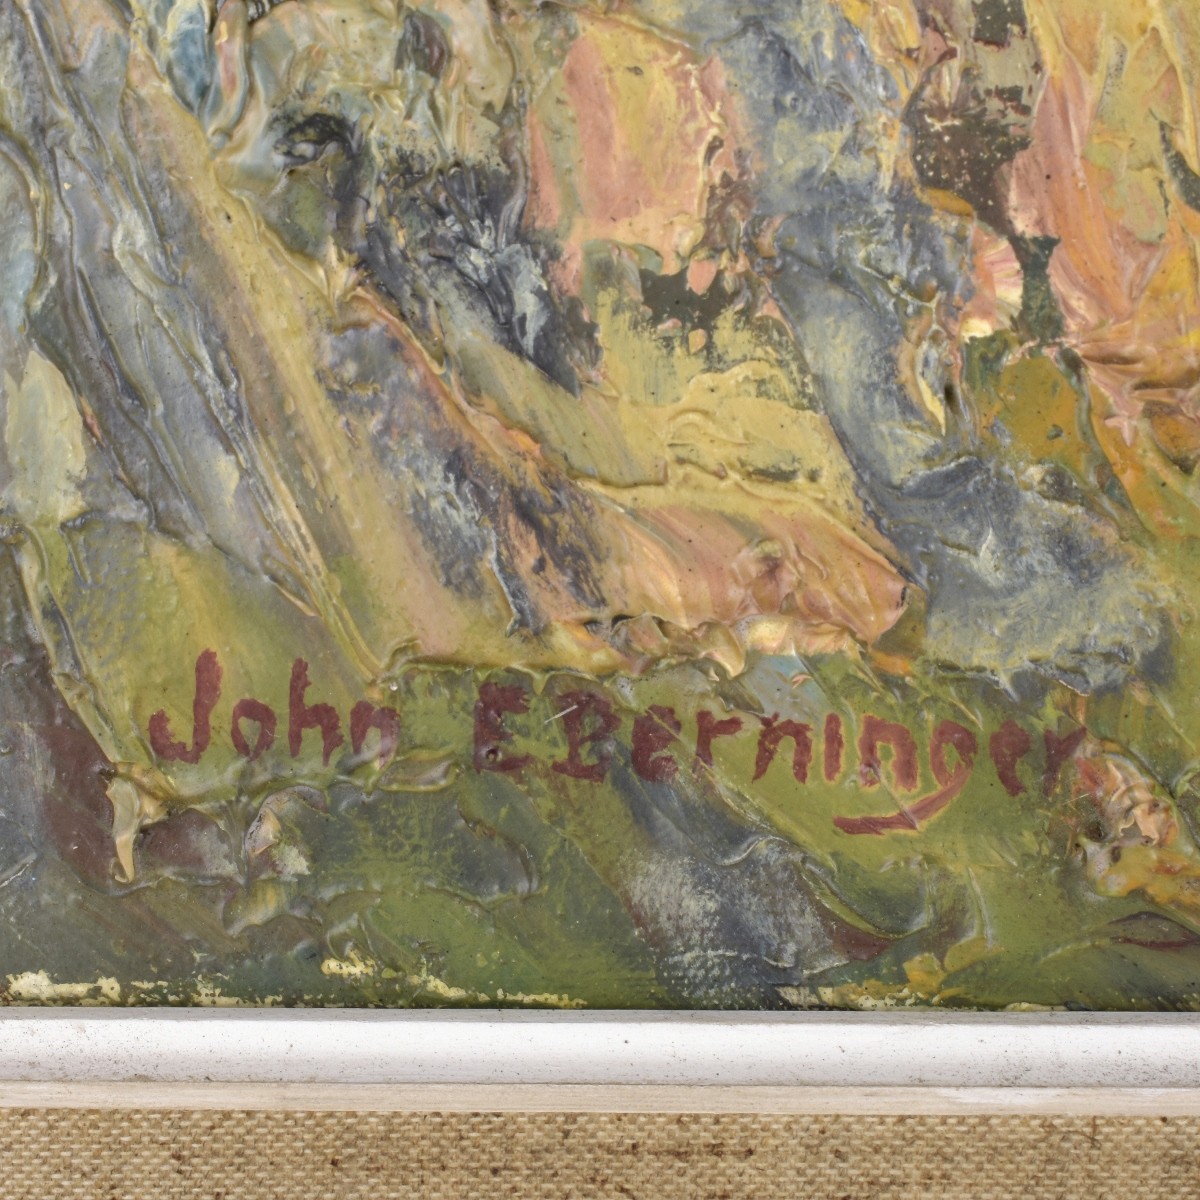 John E. Berninger, American (1897–1981)